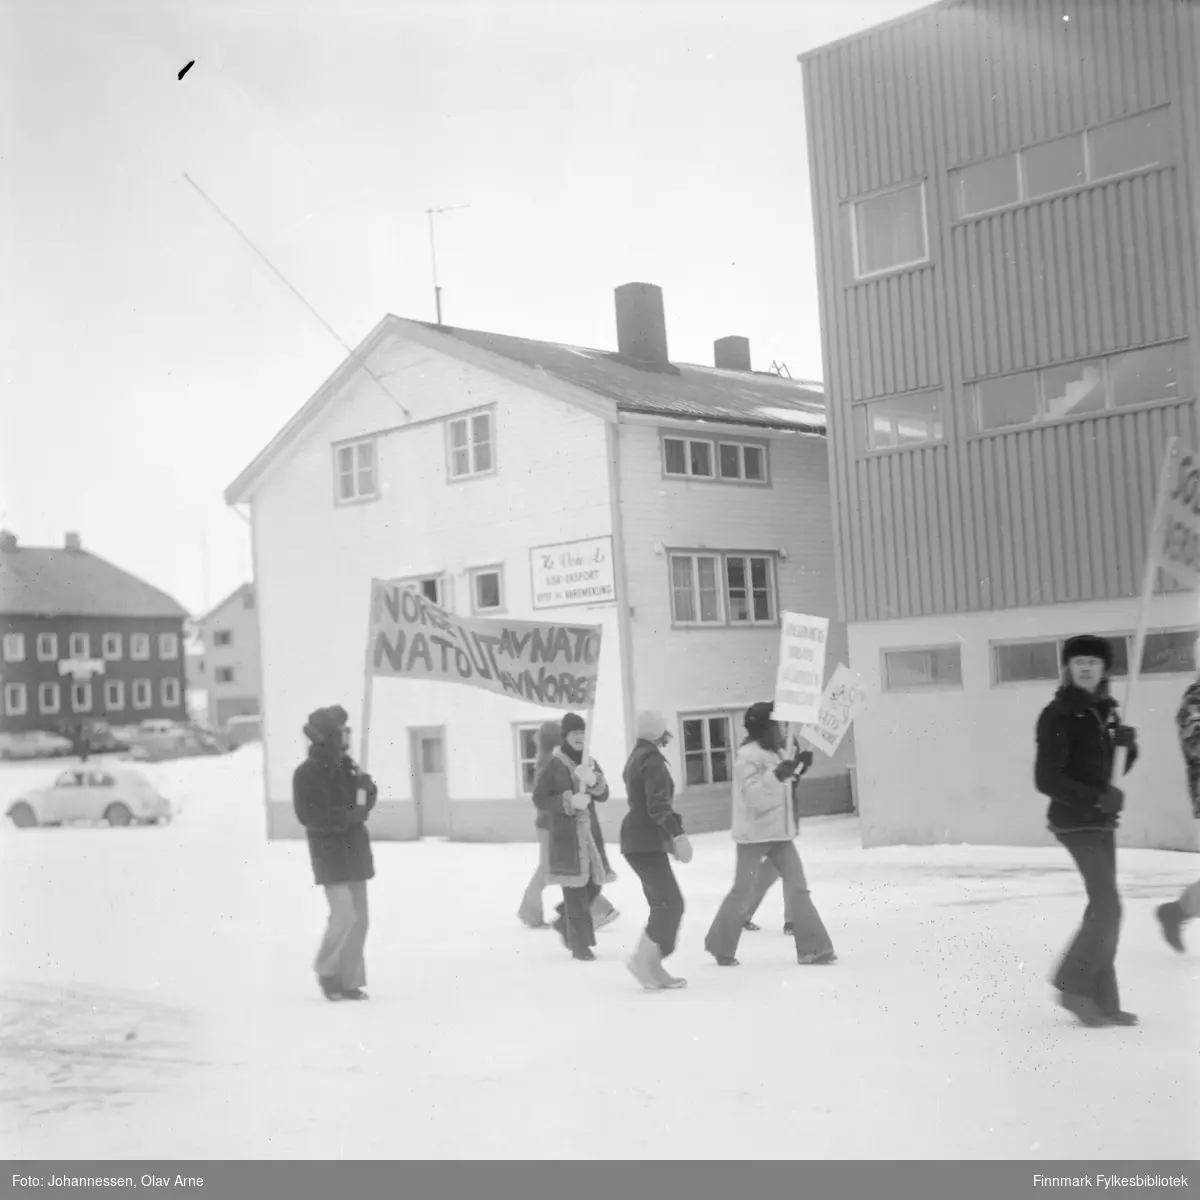 1. maitog utenfor Kr. Voie fiskebruk i Båtsfjord

Fiskarheimen Havly til venstre

Bærer av banner (til høyre i sausekinn) het Monsen, bror til William Monsen

Foto trolig tatt på tidlig 1970-tallet
